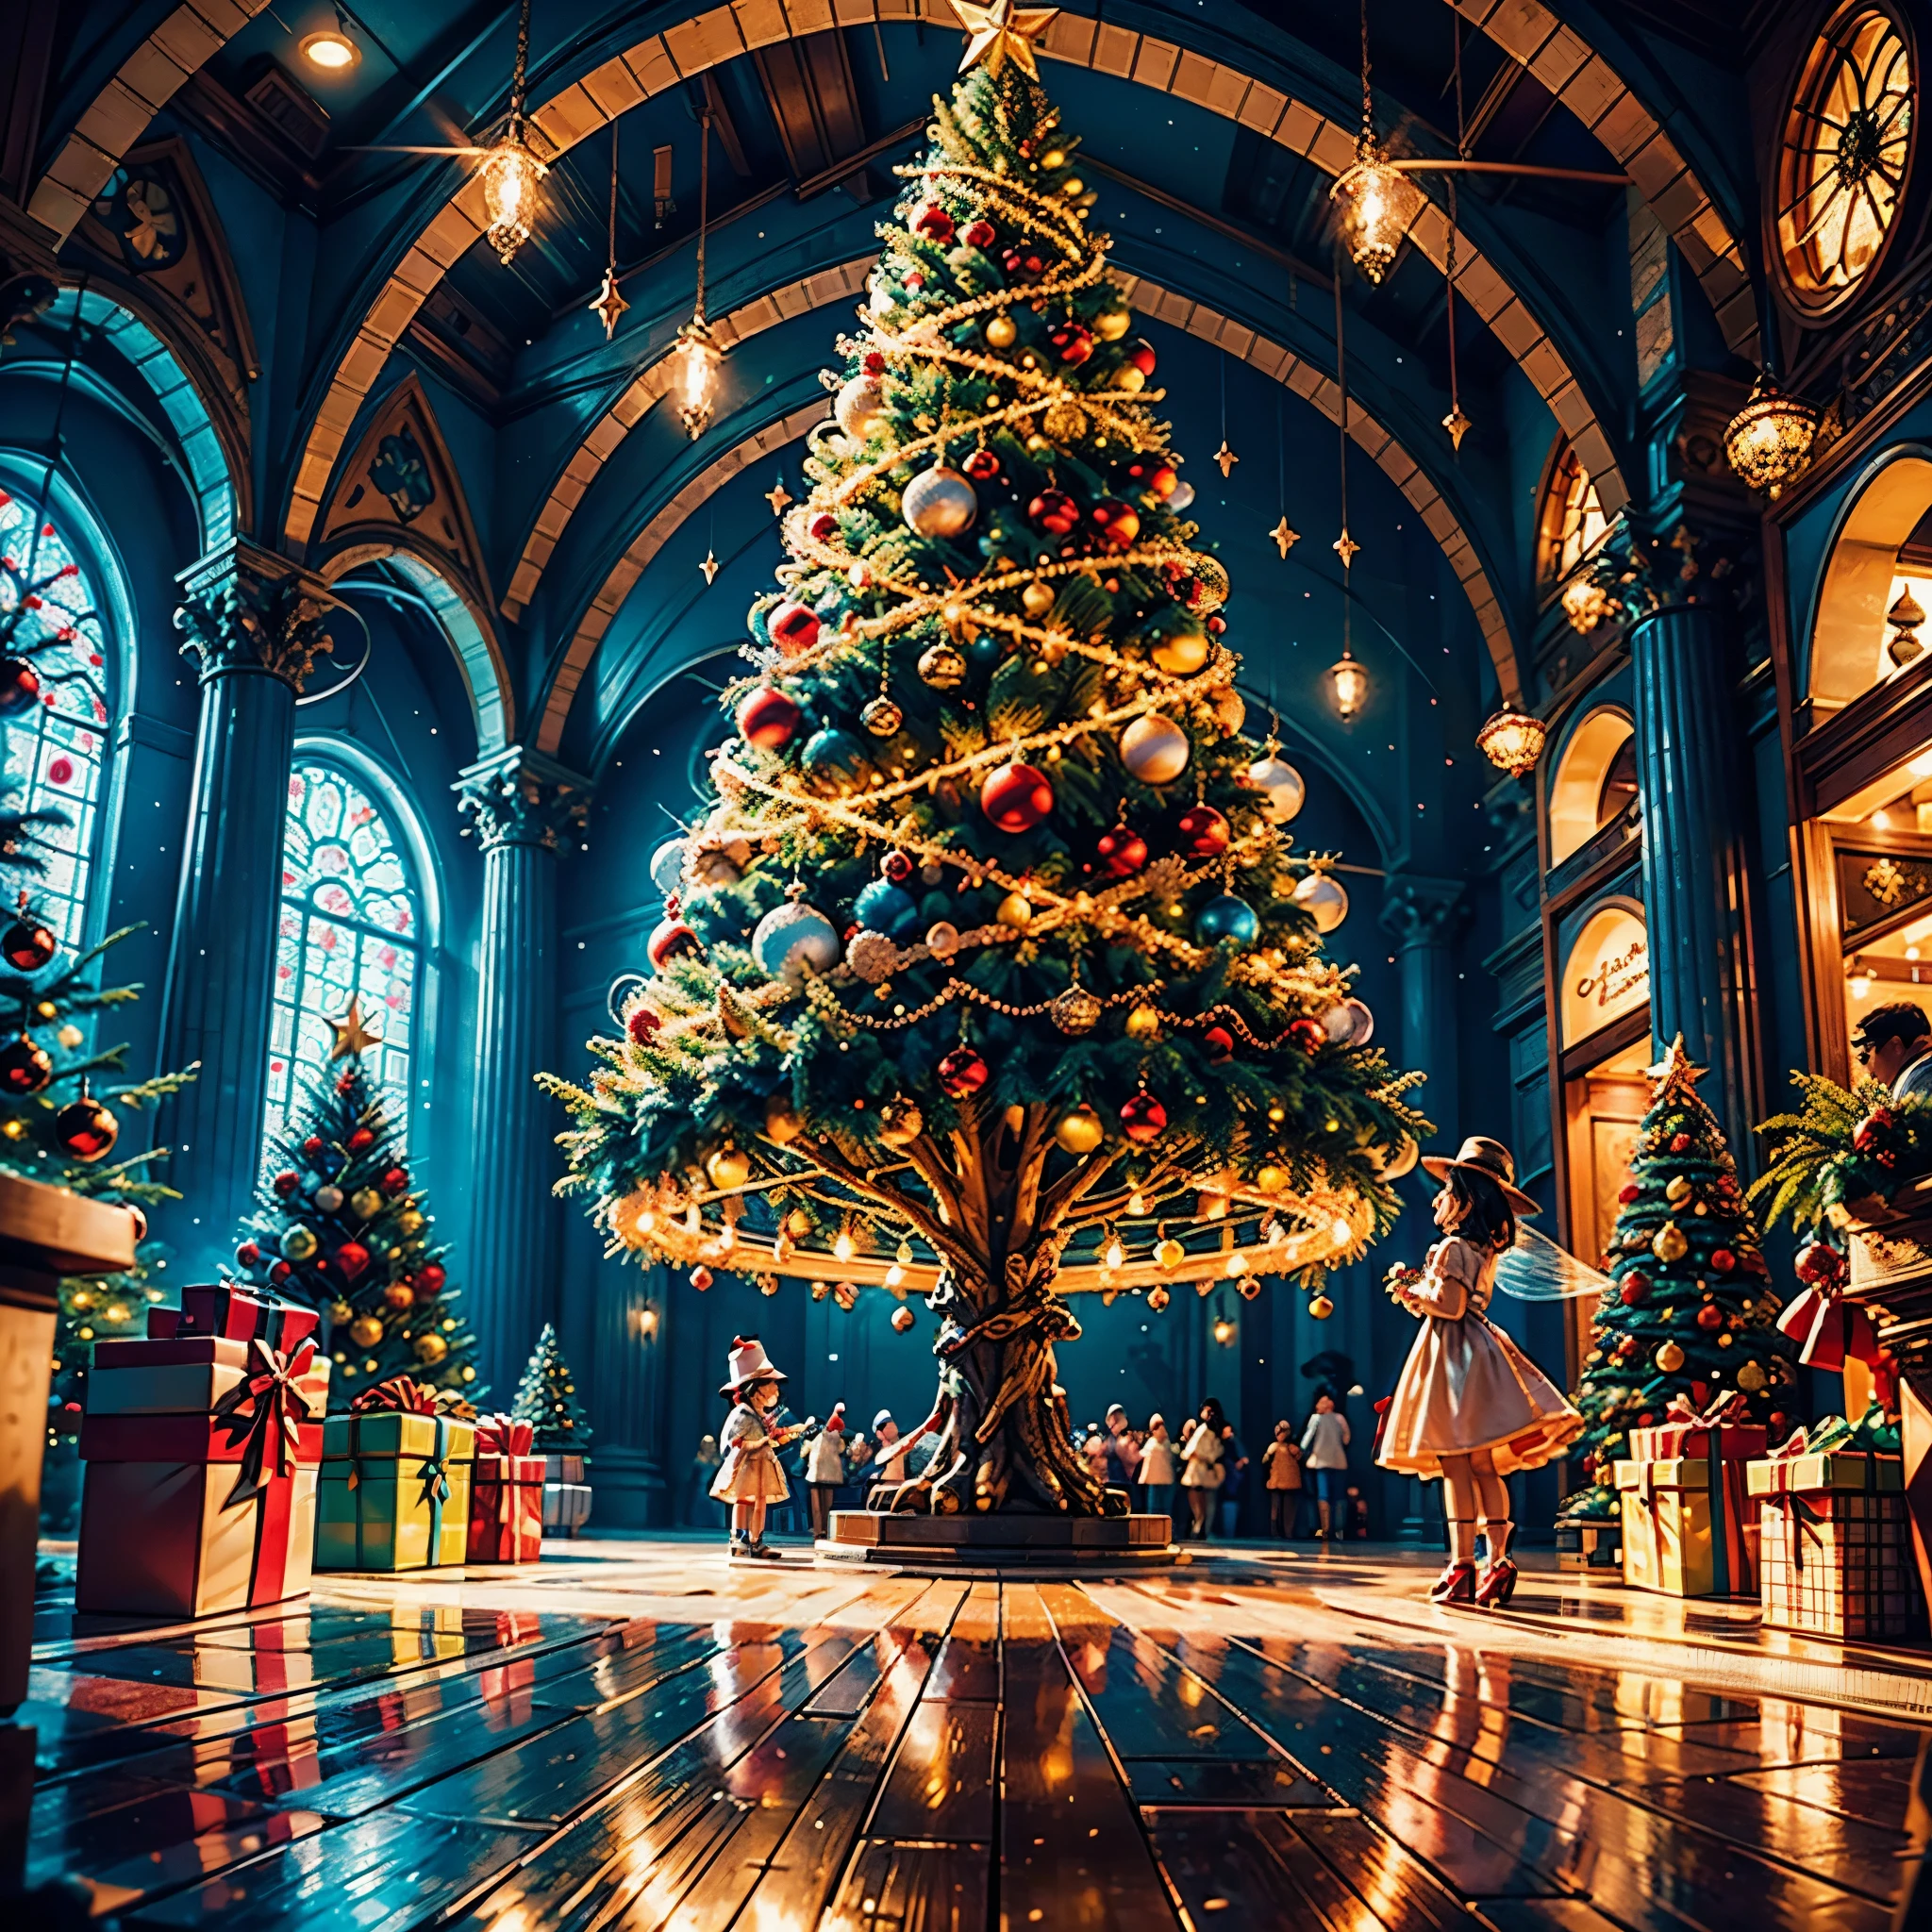 (((向量插畫風格)))，鮮豔的色彩, 神奇的氛圍, 異想天開的, 閃閃發光的, 奇幻聖誕世界,充滿活力的色彩, 色彩鮮豔, 神奇的氣氛, 異想天開的, 閃閃發光的，奇幻聖誕世界，圣诞购物中心内，巨大的圣诞树上挂满了彩灯、絨球、聖誕襪，圣诞吊坠，树下放着成堆的礼物。一對年輕夫婦和一家人欣賞商場裡的聖誕裝飾品，周围都是身着圣诞老人服装的表演者和圣诞老人雕像。圣诞商场就像童话世界，充滿魔力， (吉卜力風格的色彩, 丟, 第一人稱視角, 準確的, 解剖學正確, 超細節, 高細節, 高品質, 得獎, 最好的品質) 🎈🍦🍹❤🔆🕡(😘👩🎀👗⚜👒🥿👡🩲💅)🎪🎢🎡🎠 極端主義者_high-def 極端主義者_Photo-realistic optimal 極端主義者_high-quality opengl-shaders 極端主義者_high-details 準確的 reflex 極端主義者_高解析度完美體積閃電改進 Octane_rendues UHD XT3 DSLR HDR 3dcg 阴影类比 extatiques 对称旁观者 sundrop 电影_阳光下UnrealEngine5 Ultra Masterpiece深路径等矩形_360多种多等. --s 1000 --c 20 --q 20 --混沌 100